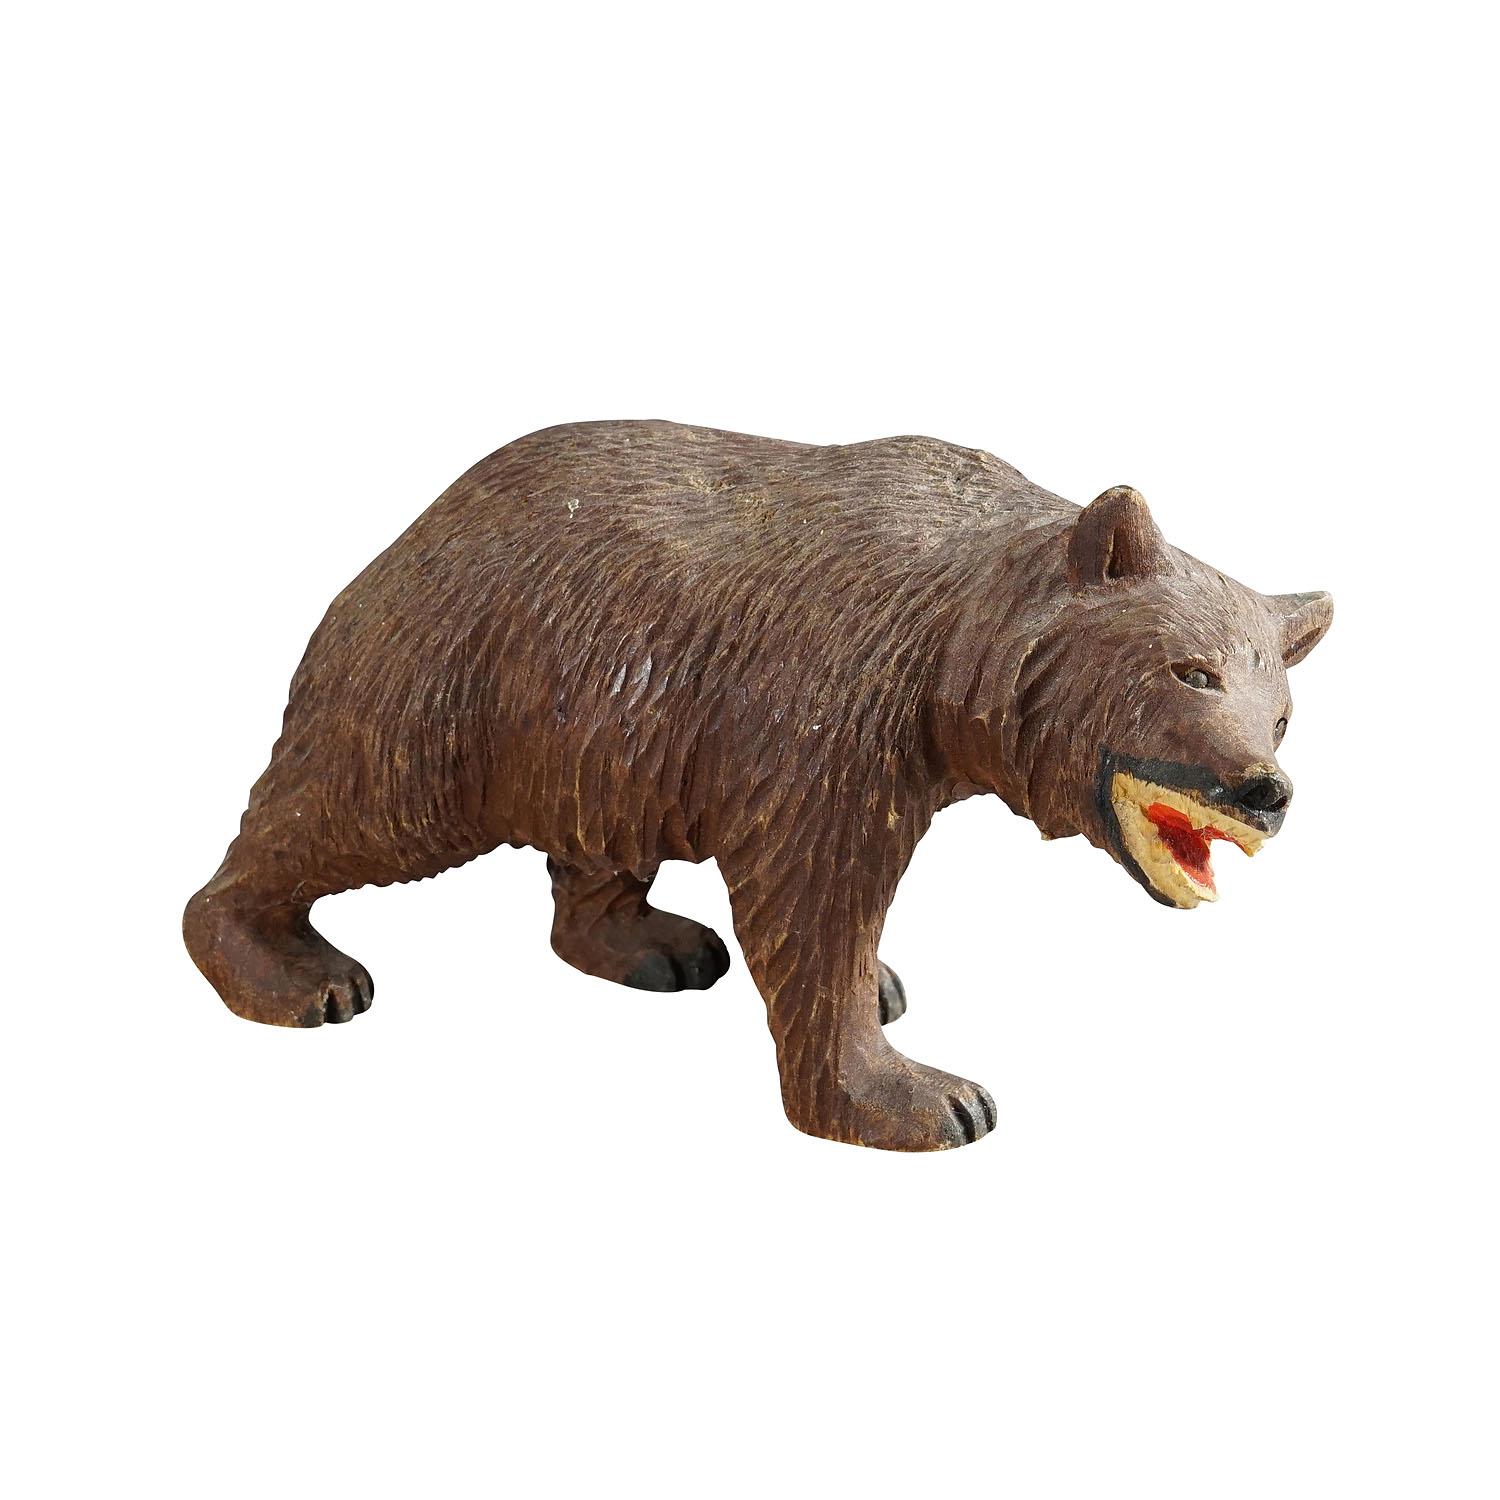 Ancien ours en bois en promenade sculpté à la main à Brienz vers 1950

Une statue vintage d'un ours qui marche. En bois de tilleul, finement sculpté à la main avec des détails naturalistes à Brienz, Suisse, vers 1950. Un bel exemple des célèbres